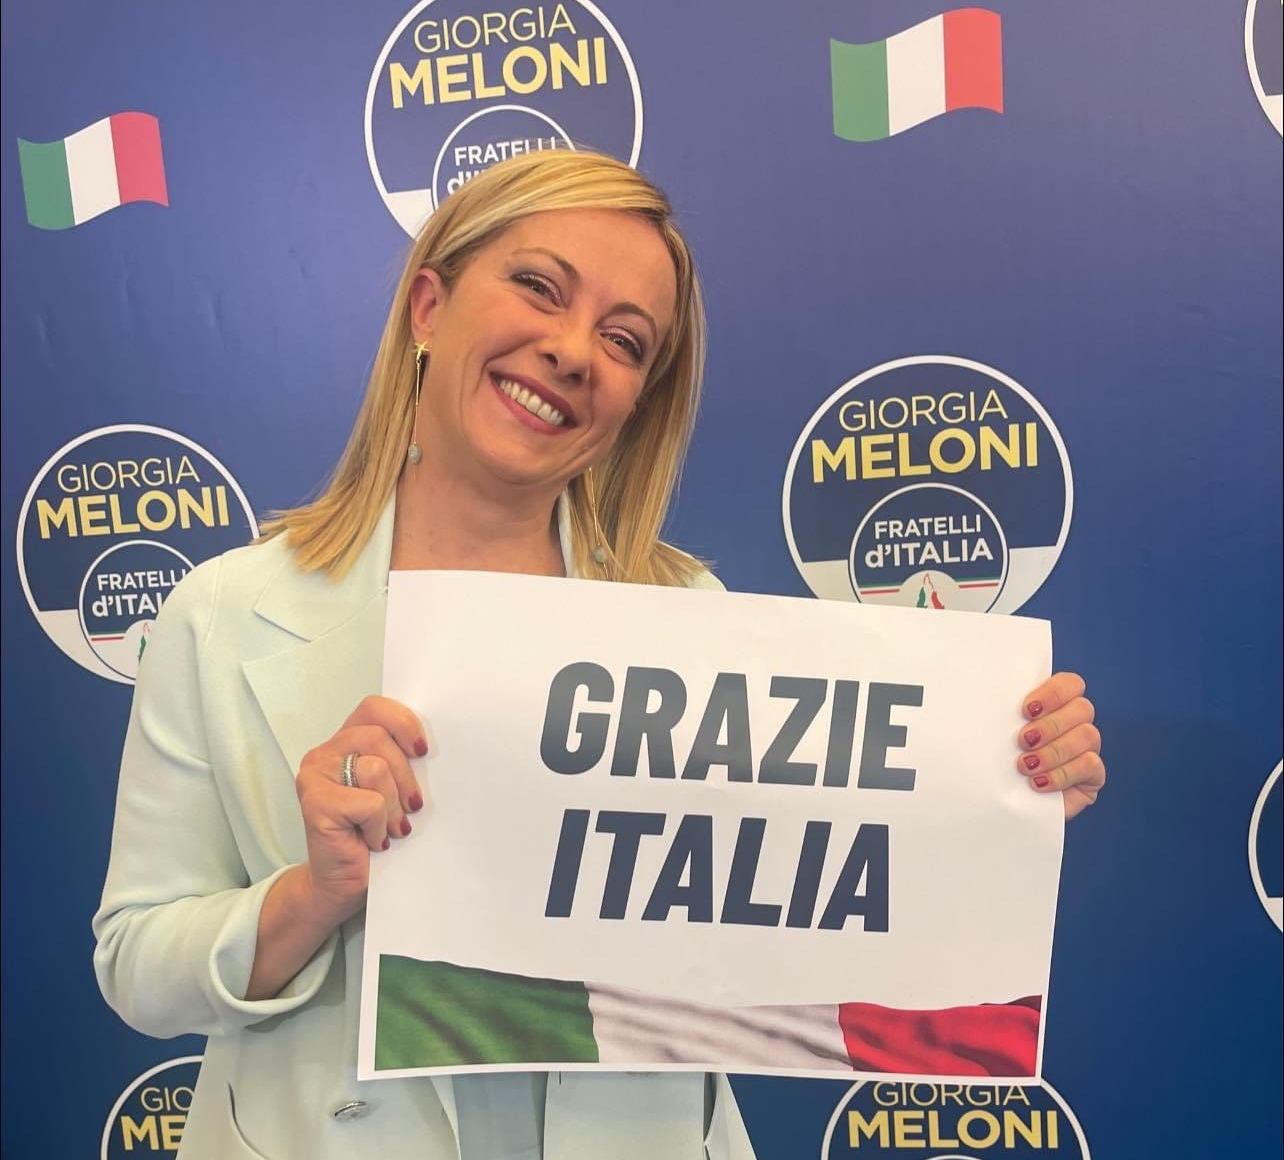 Direitista, Giorgia Meloni é eleita premiê e será a 1ª mulher a governar a Itália 1